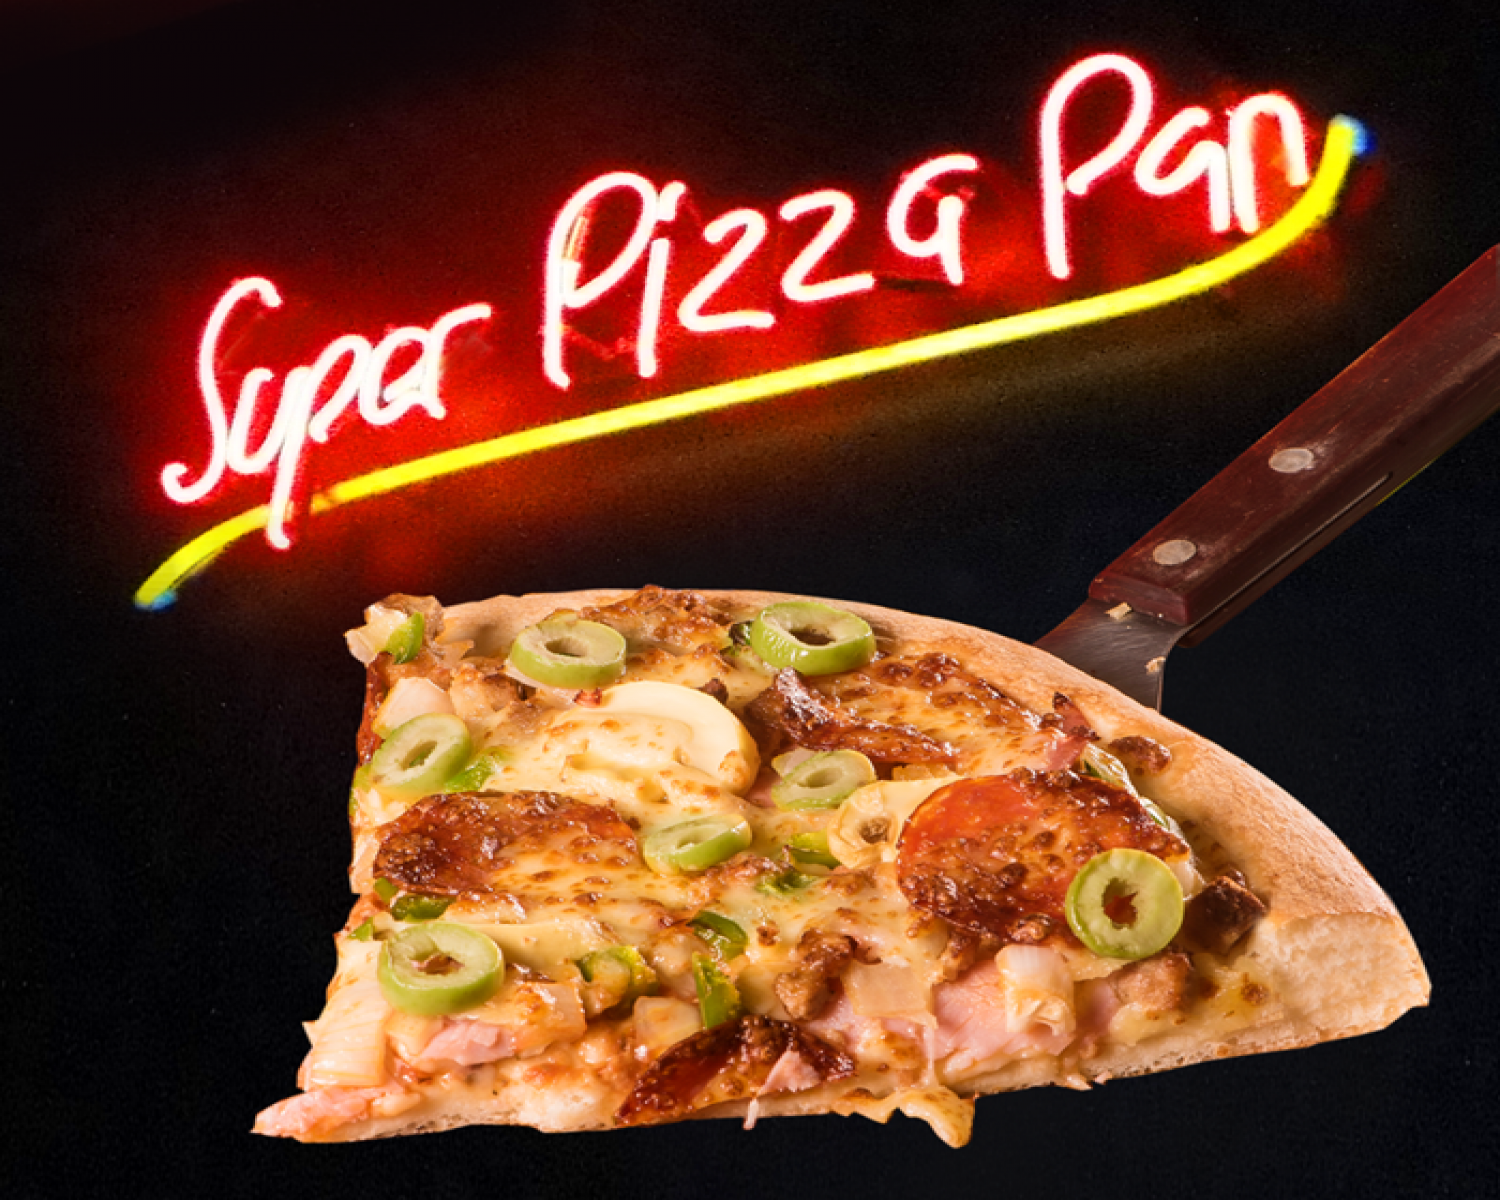 Super Pizza - Super Pizza Pan